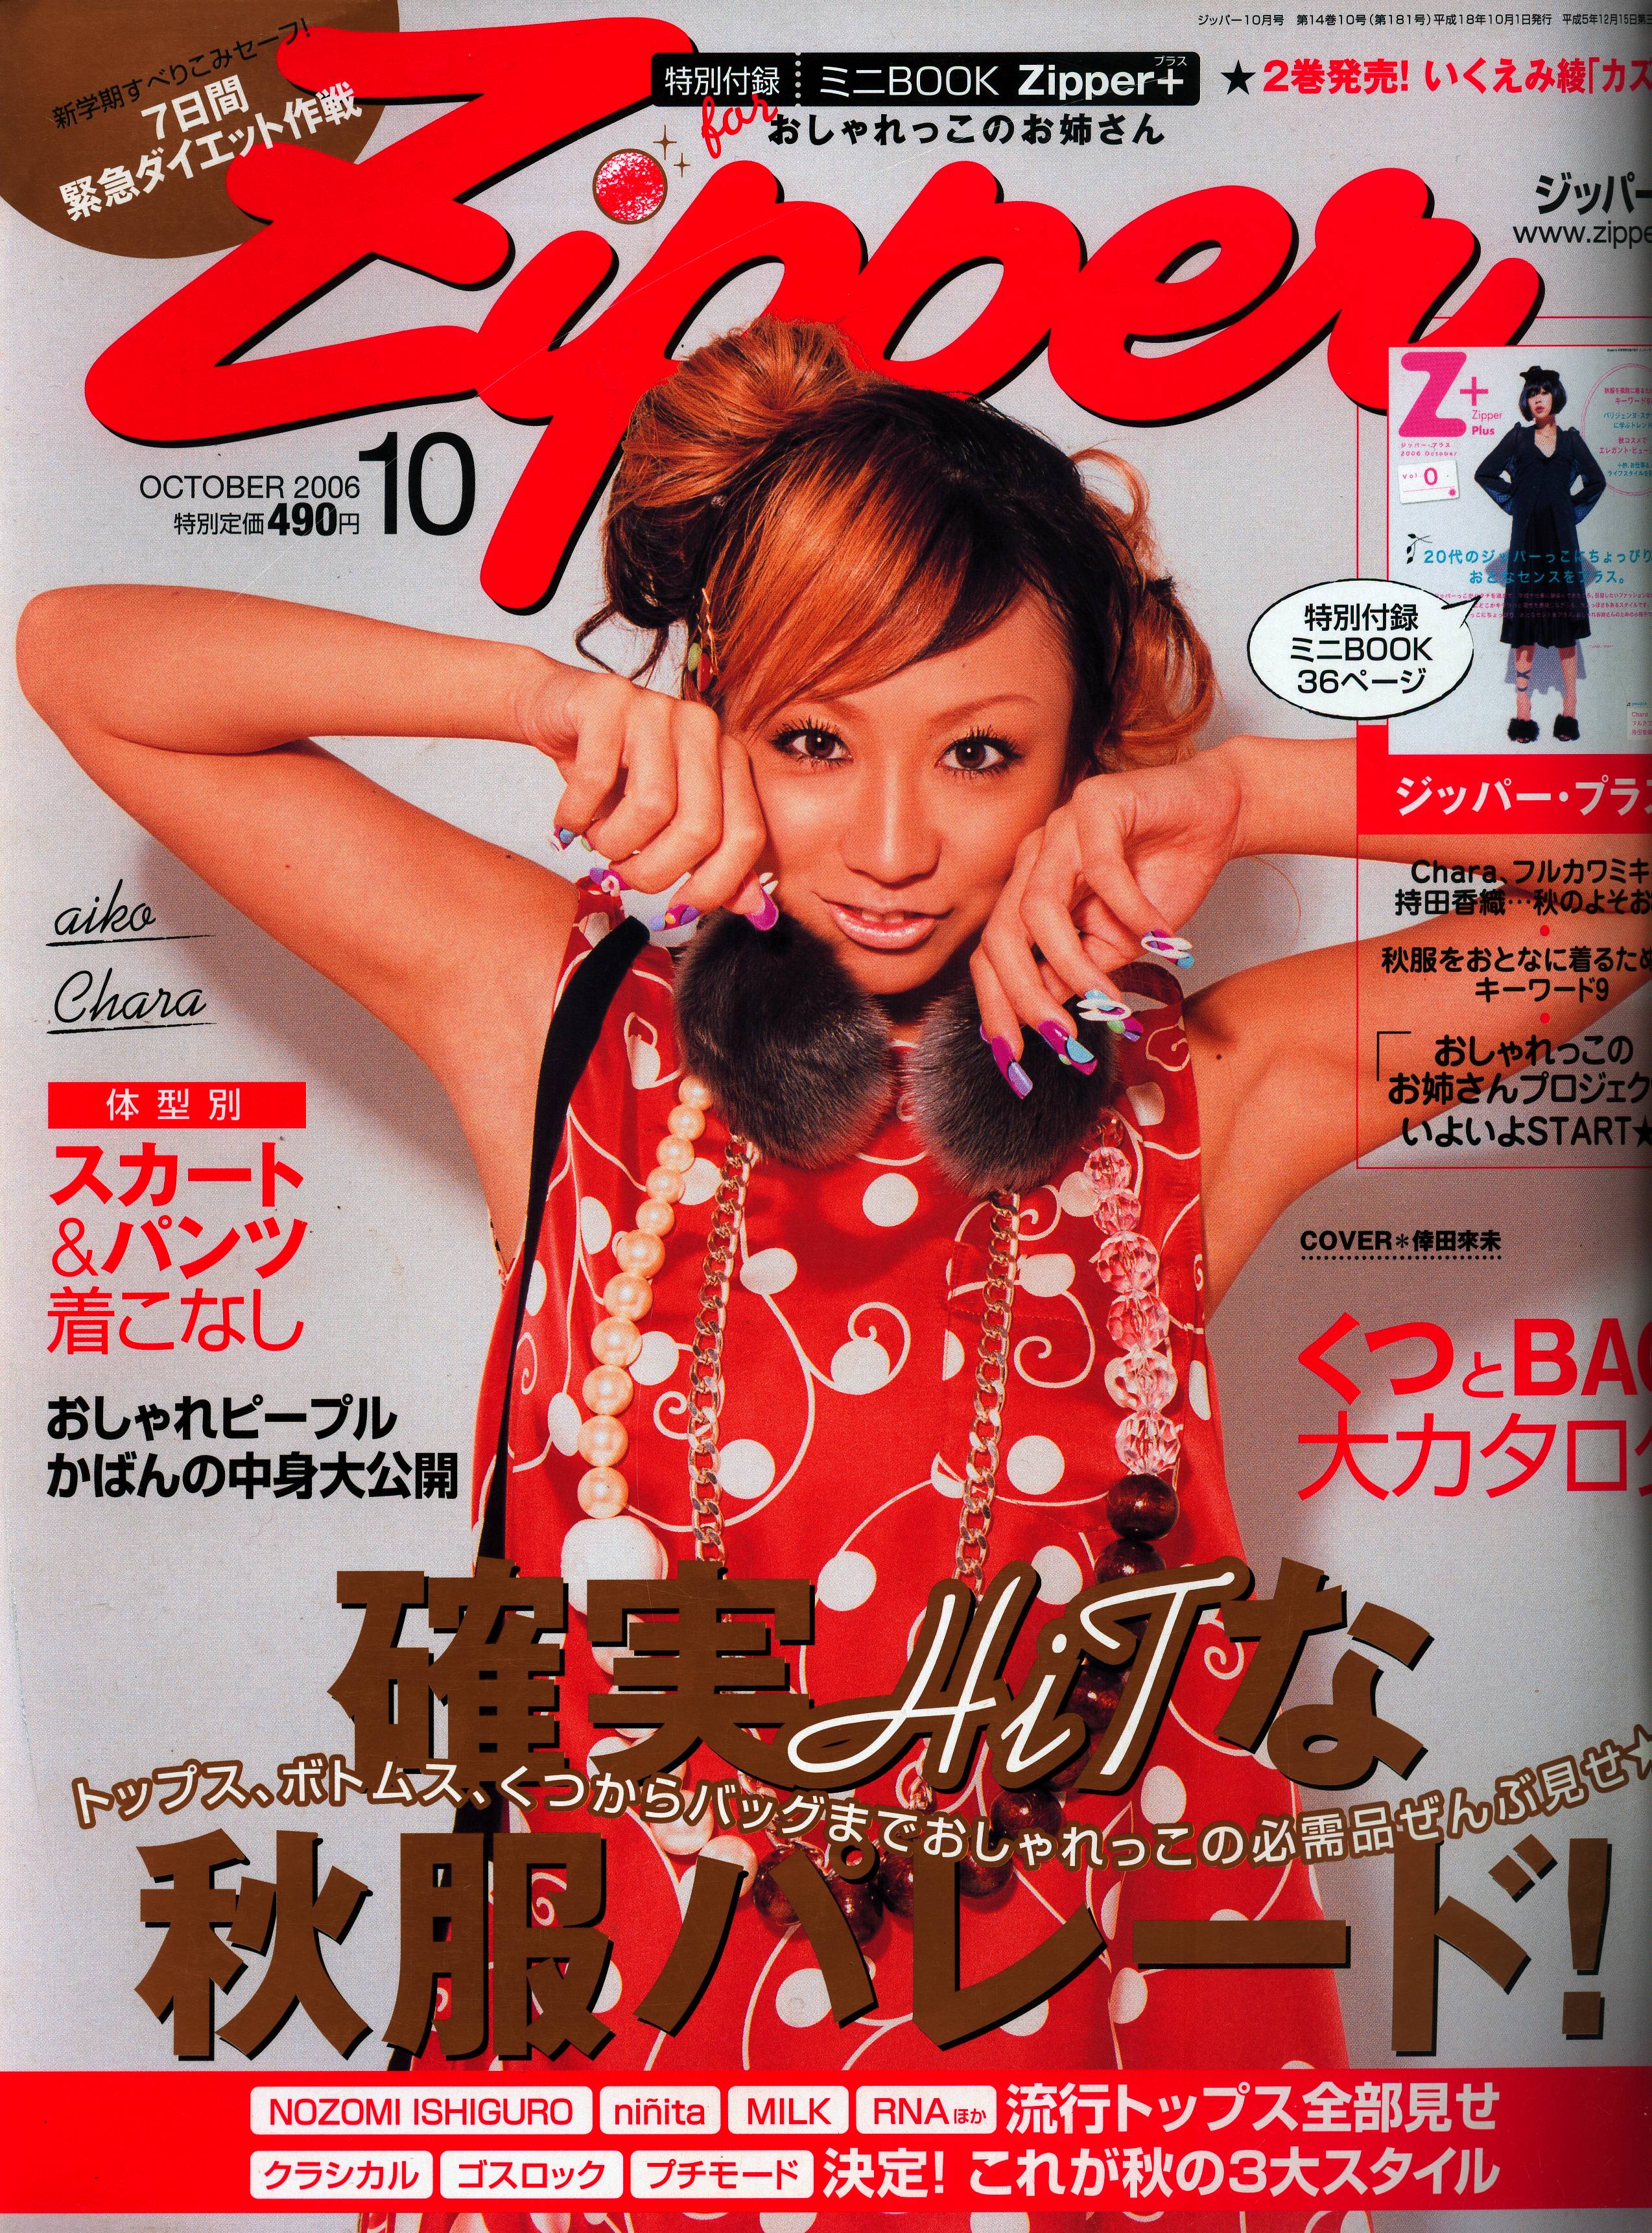 Zipper/2006-08